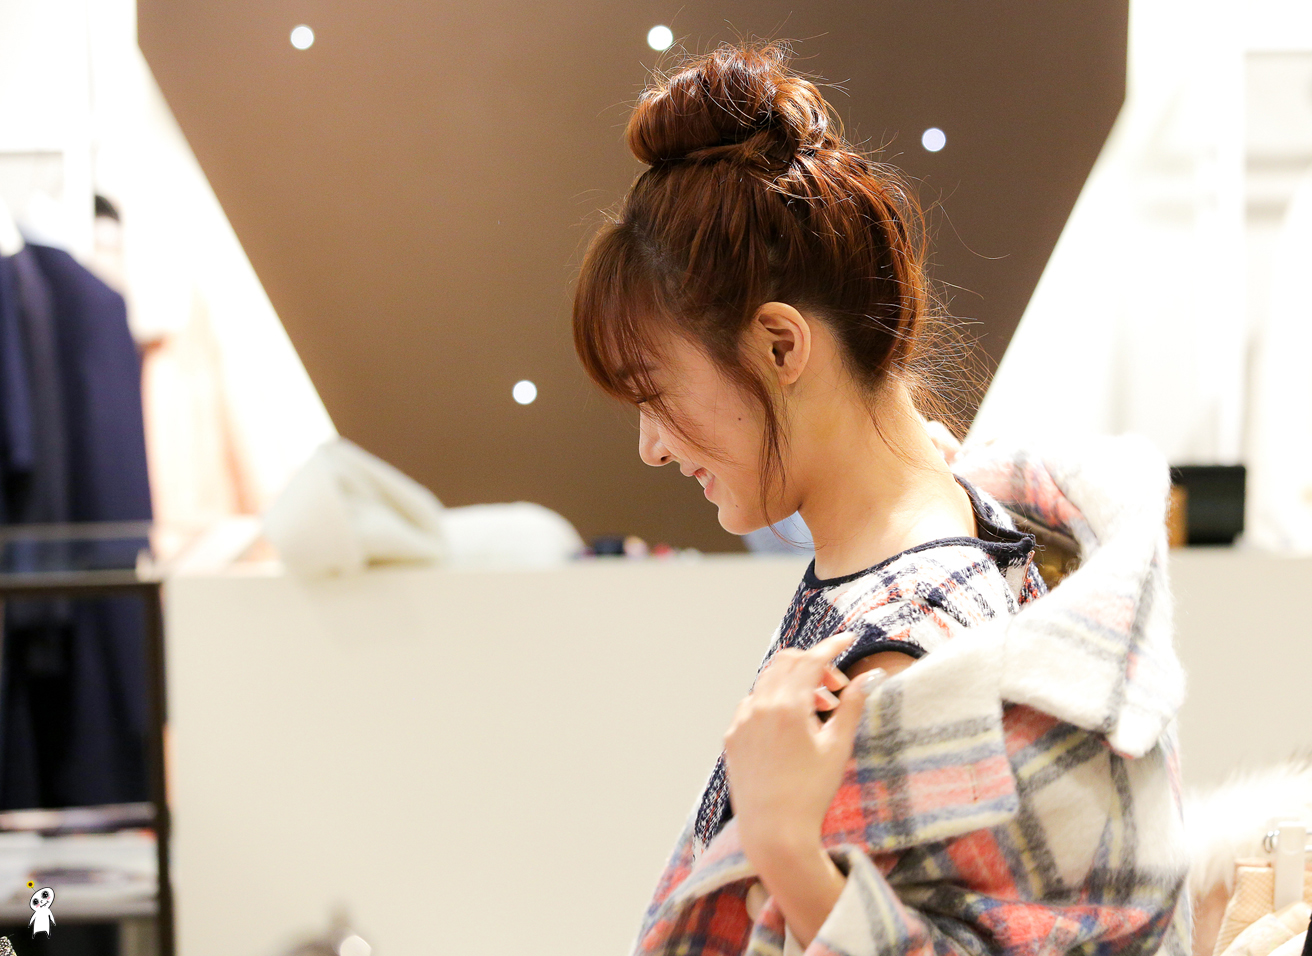 [PIC][28-11-2013]Tiffany ghé thăm cửa hàng "QUA" ở Hyundai Department Store vào trưa nay - Page 3 274EB44152980C920724C9